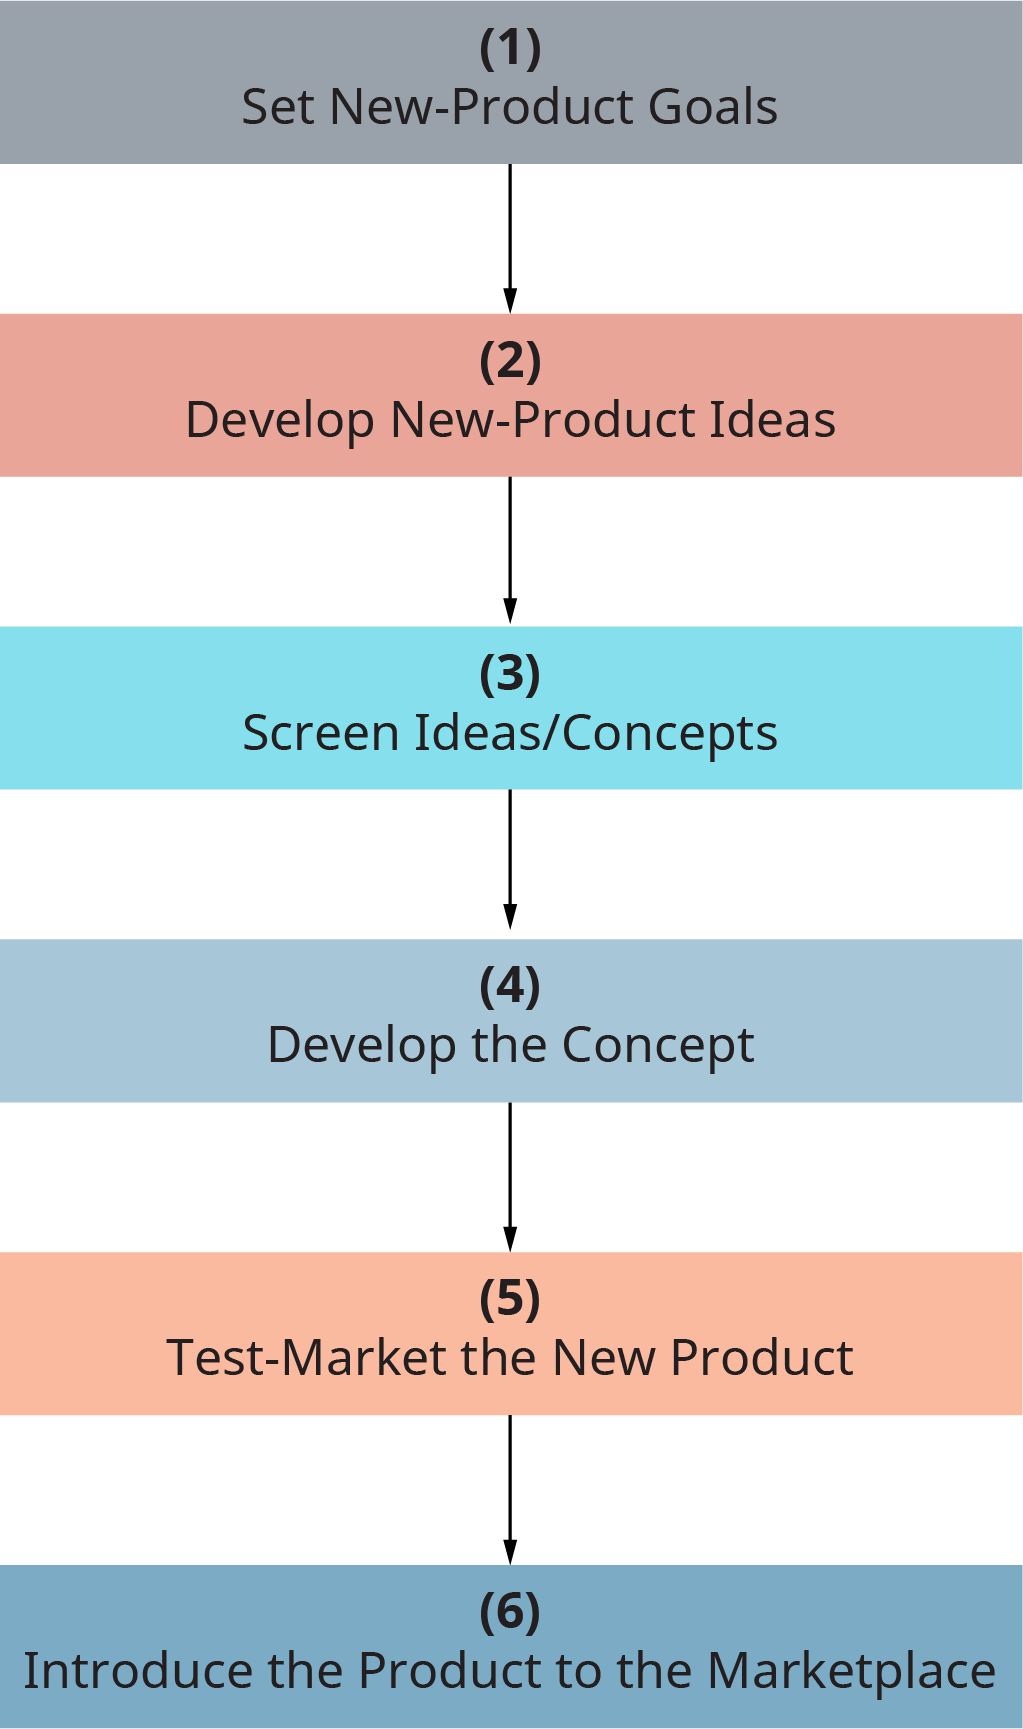 每一步都进入下一步。 第 1 步，设定新产品目标。 第 2 步，开发新产品创意。 第 3 步，屏幕创意 slash 概念。 第 4 步，发展概念。 第 5 步，测试新产品的上市。 第 6 步，将产品推向市场。